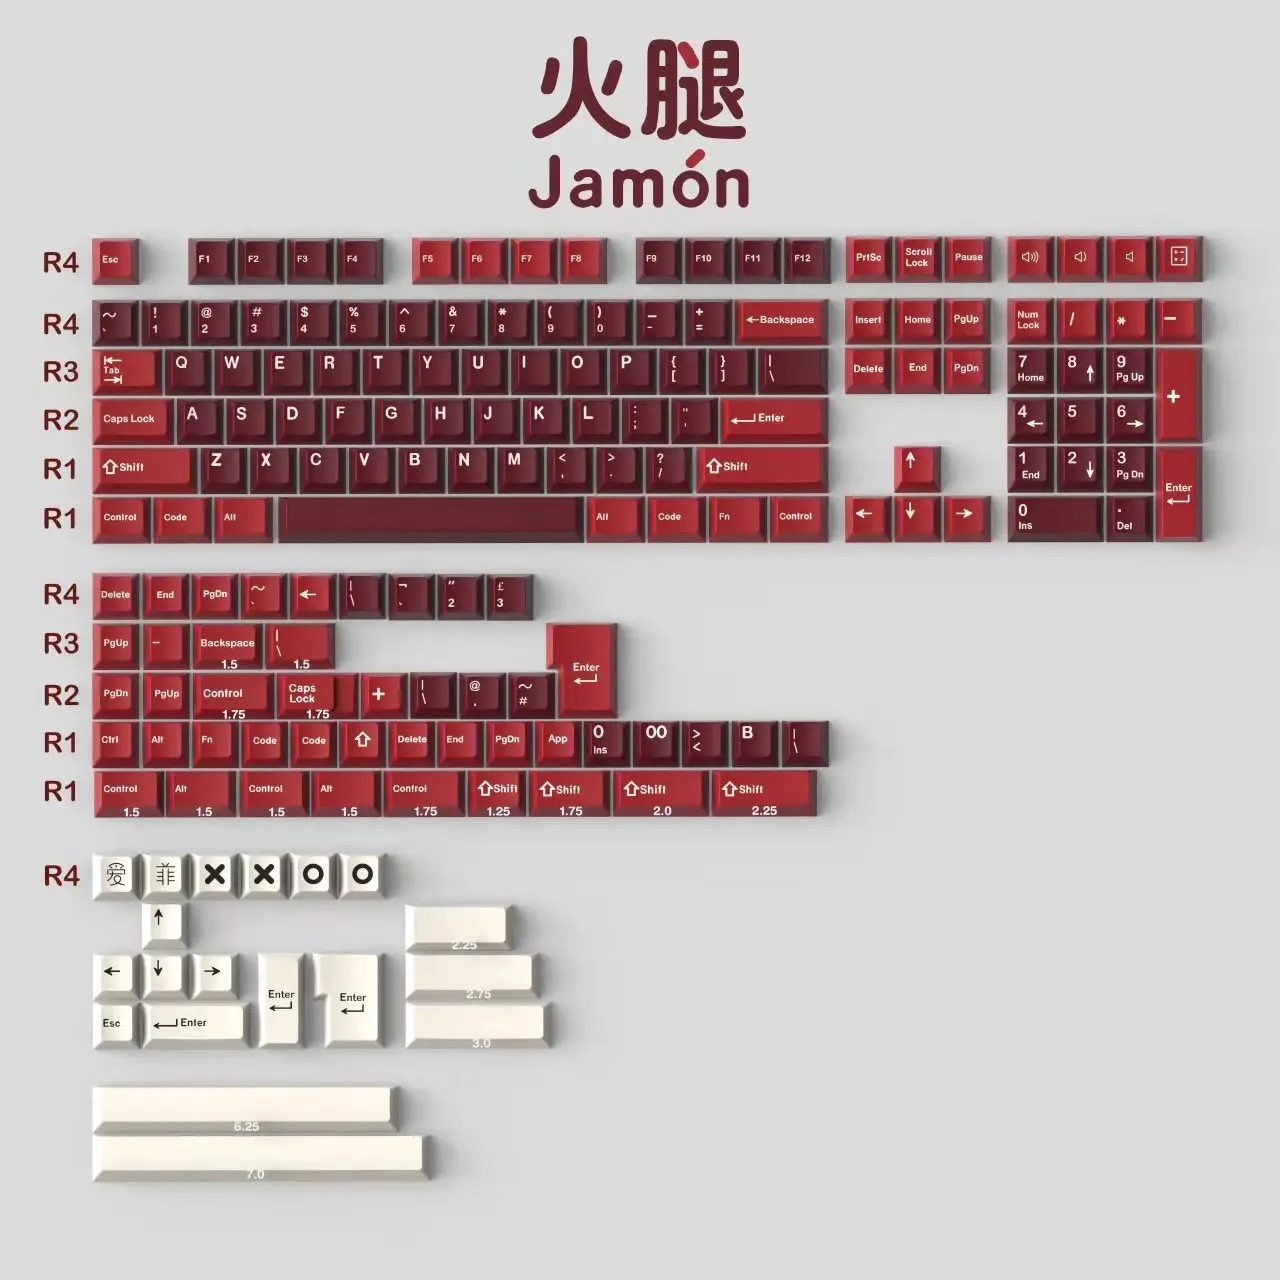 

Колпачки для клавиш GMK Jamon, ABS колпачки для клавиш с двойным выстрелом, колпачки для клавиш с профилем вишни с ISO Enter 3U 7U, клавиатура с раскладко...